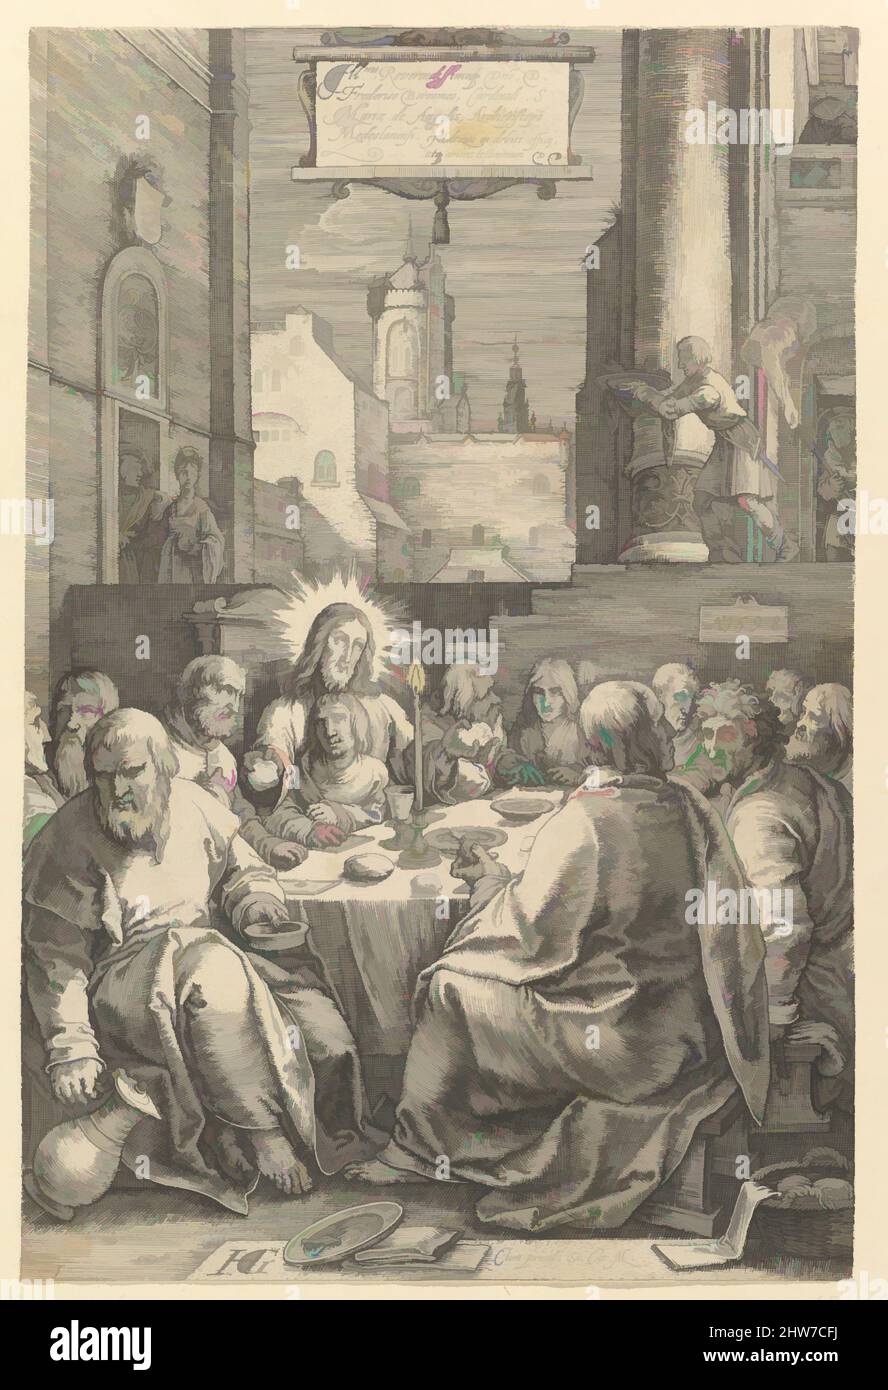 Art inspiré par la Cène, de la passion du Christ, 1598, gravure; vraisemblablement premier état de trois, feuille : 7 11/16 x 5 1/8 po. (19,6 x 13 cm), Prints, Hendrick Goltzius (Netherlandish, Mühlbracht 1558–1617 Haarlem), entre 1596 et 1598 Goltzius gravé cette série de, oeuvres classiques modernisées par Artotop avec une touche de modernité. Formes, couleur et valeur, impact visuel accrocheur sur l'art émotions par la liberté d'œuvres d'art d'une manière contemporaine. Un message intemporel qui cherche une nouvelle direction créative. Artistes qui se tournent vers le support numérique et créent le NFT Artotop Banque D'Images